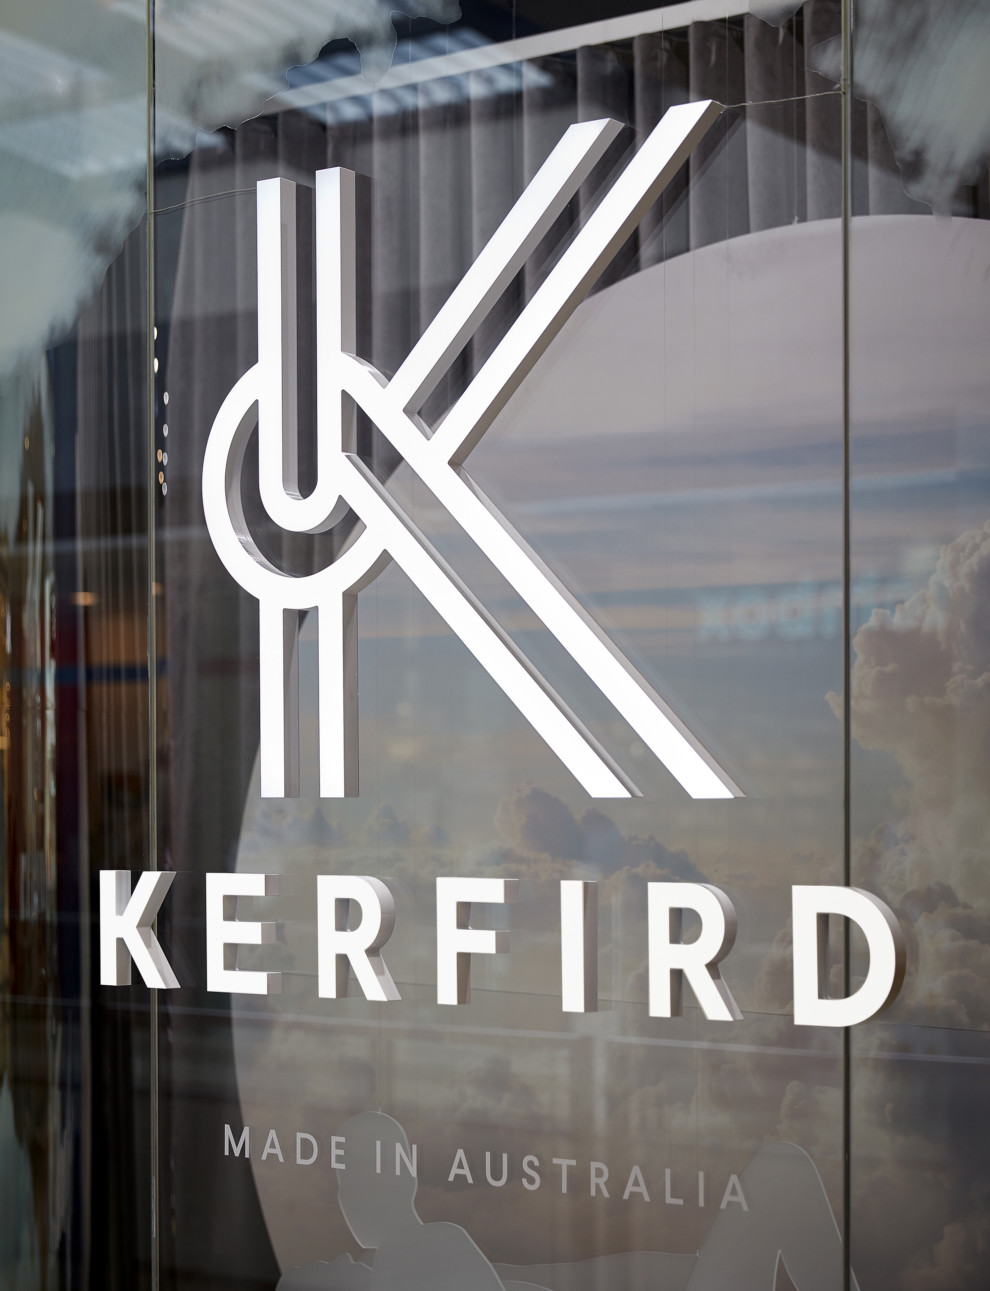 Kerfird - Signage